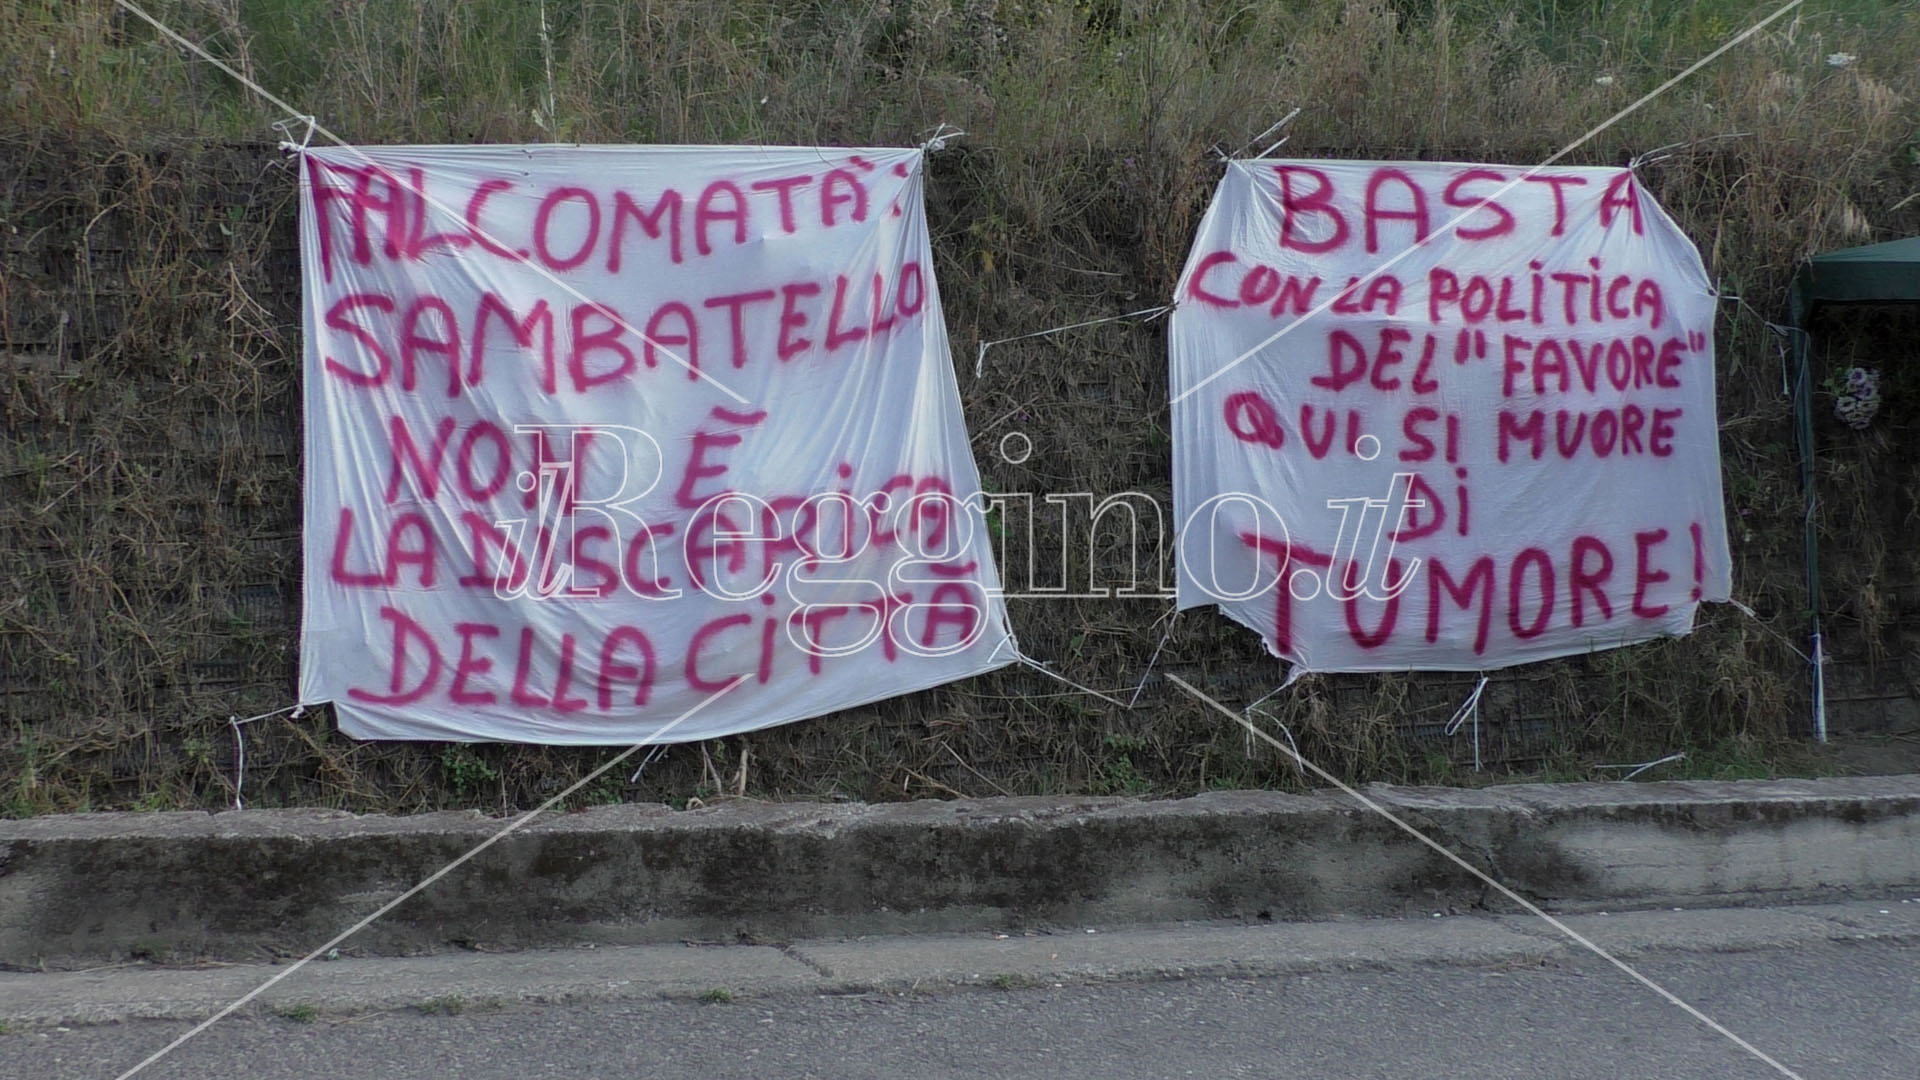 Reggio Calabria, Legambiente solidale col presidio spontaneo degli abitanti di Sambatello